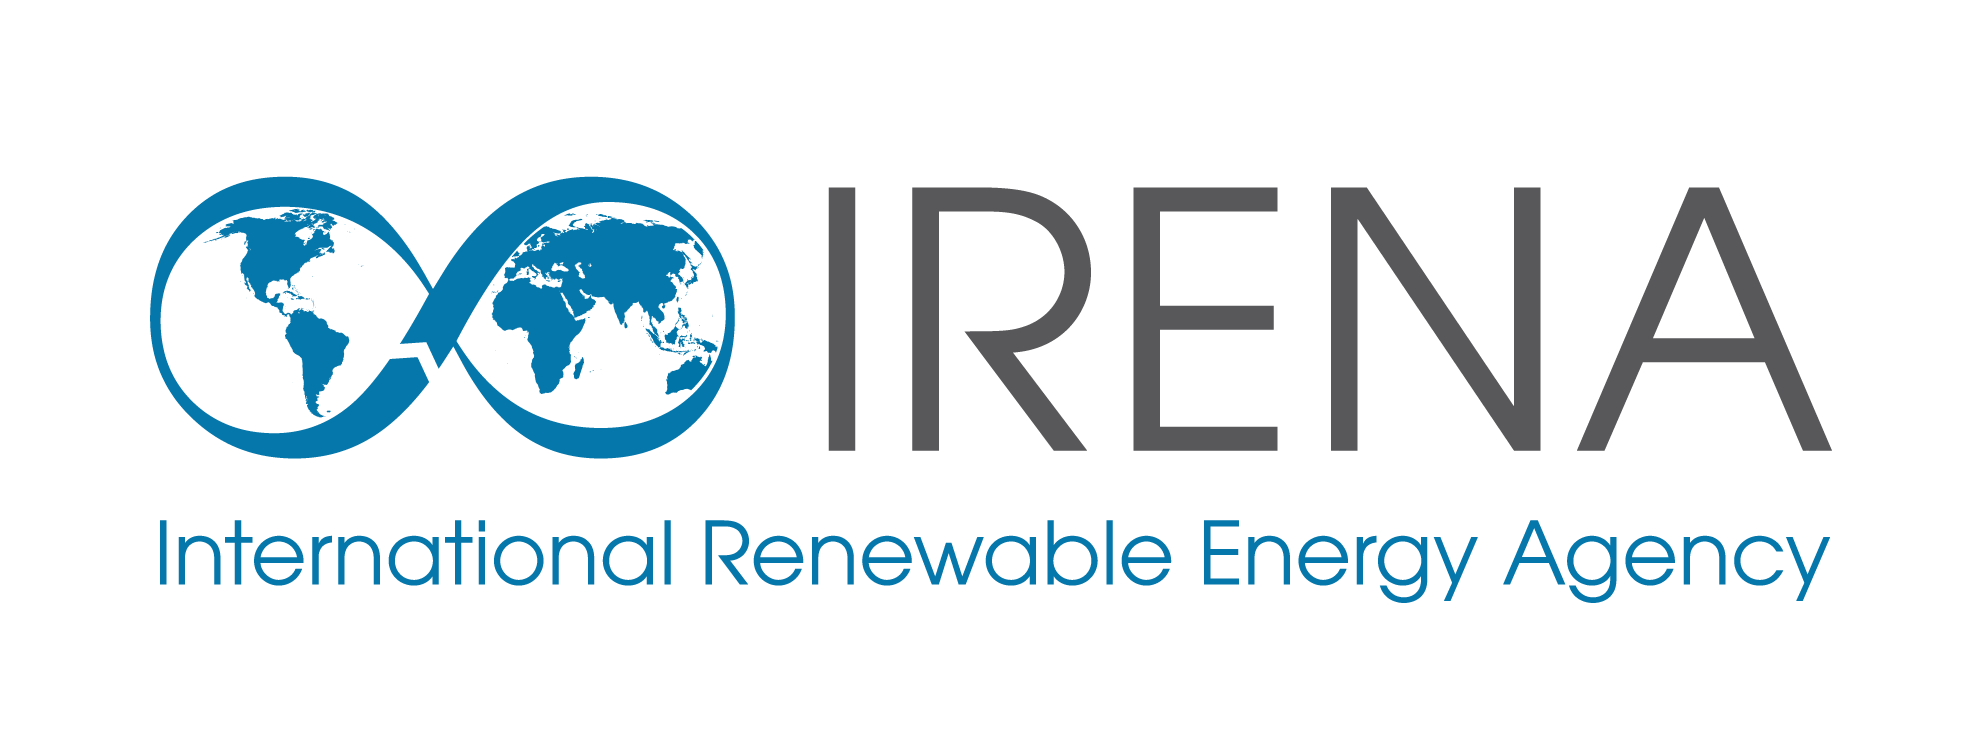 Image: logo de l'Agence internationale pour les energies renouvelables (IRENA)